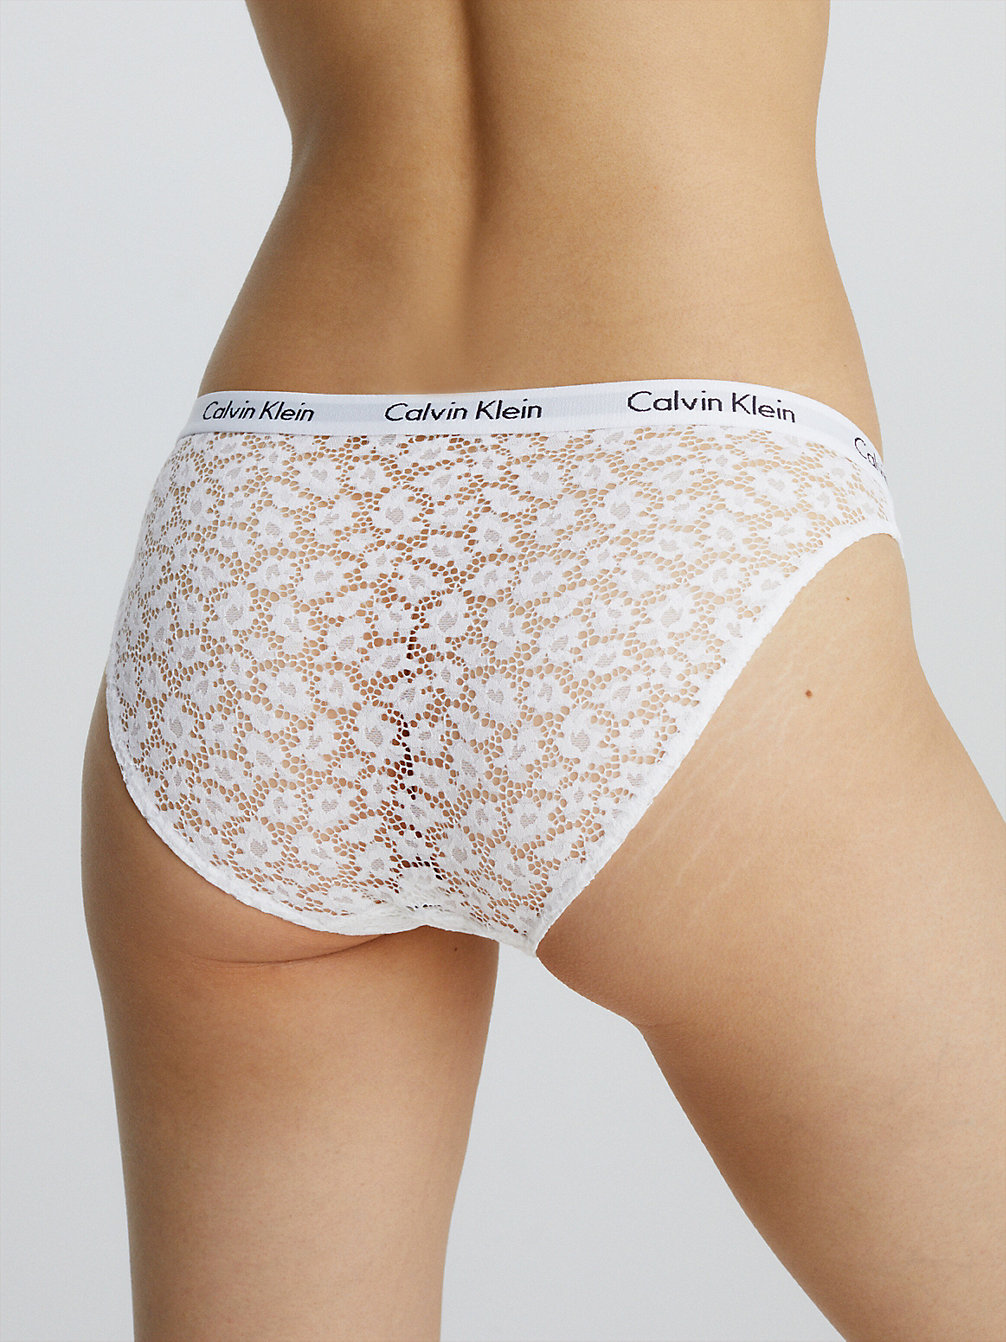 WHITE Slips - Carousel undefined Damen Calvin Klein